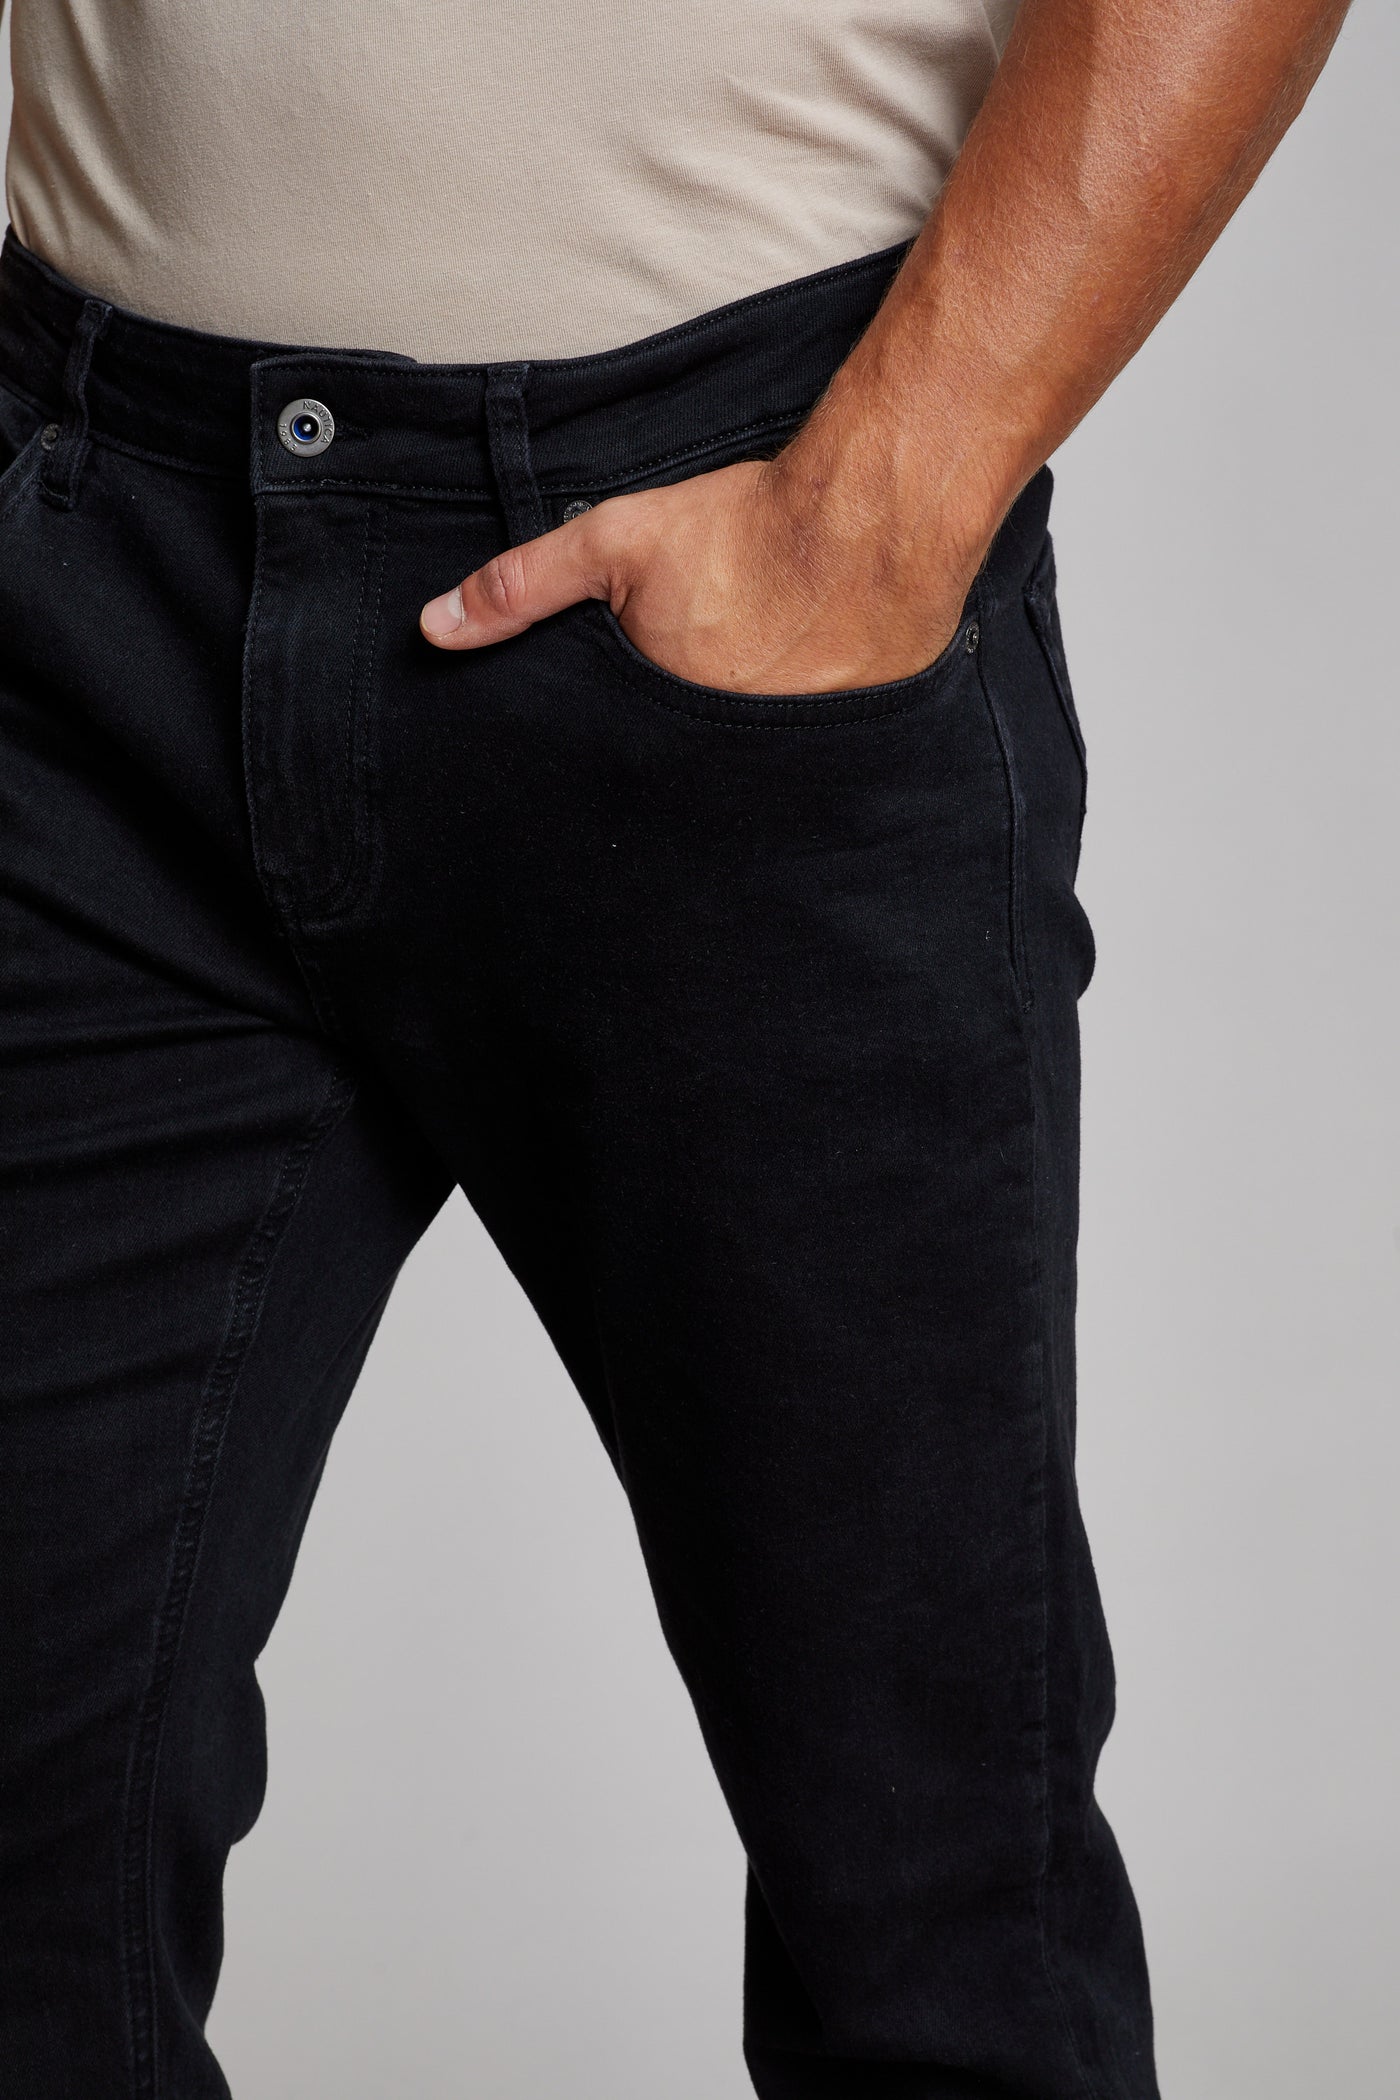 מכנס ג'ינס בצבע שחור SLIM